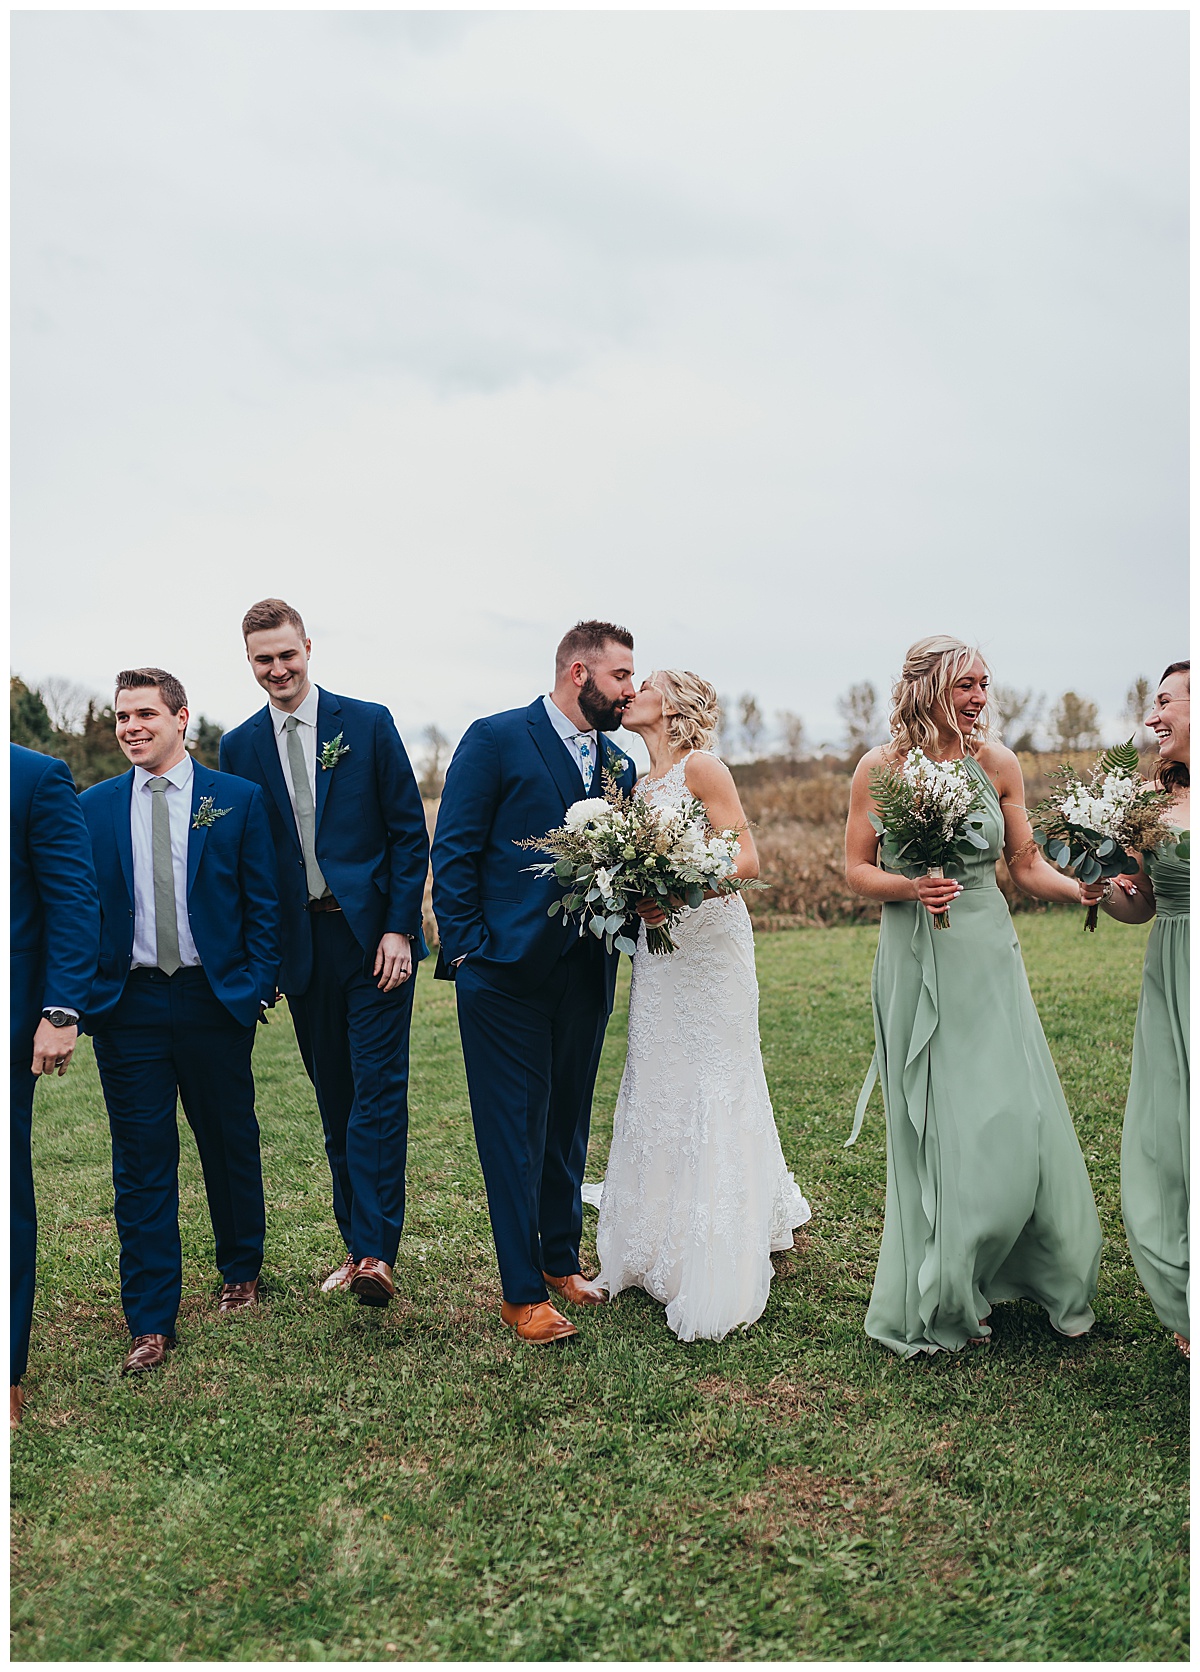 Bridal party wedding photography at Poplar Creek Barn in Oshkosh, Wisconsin